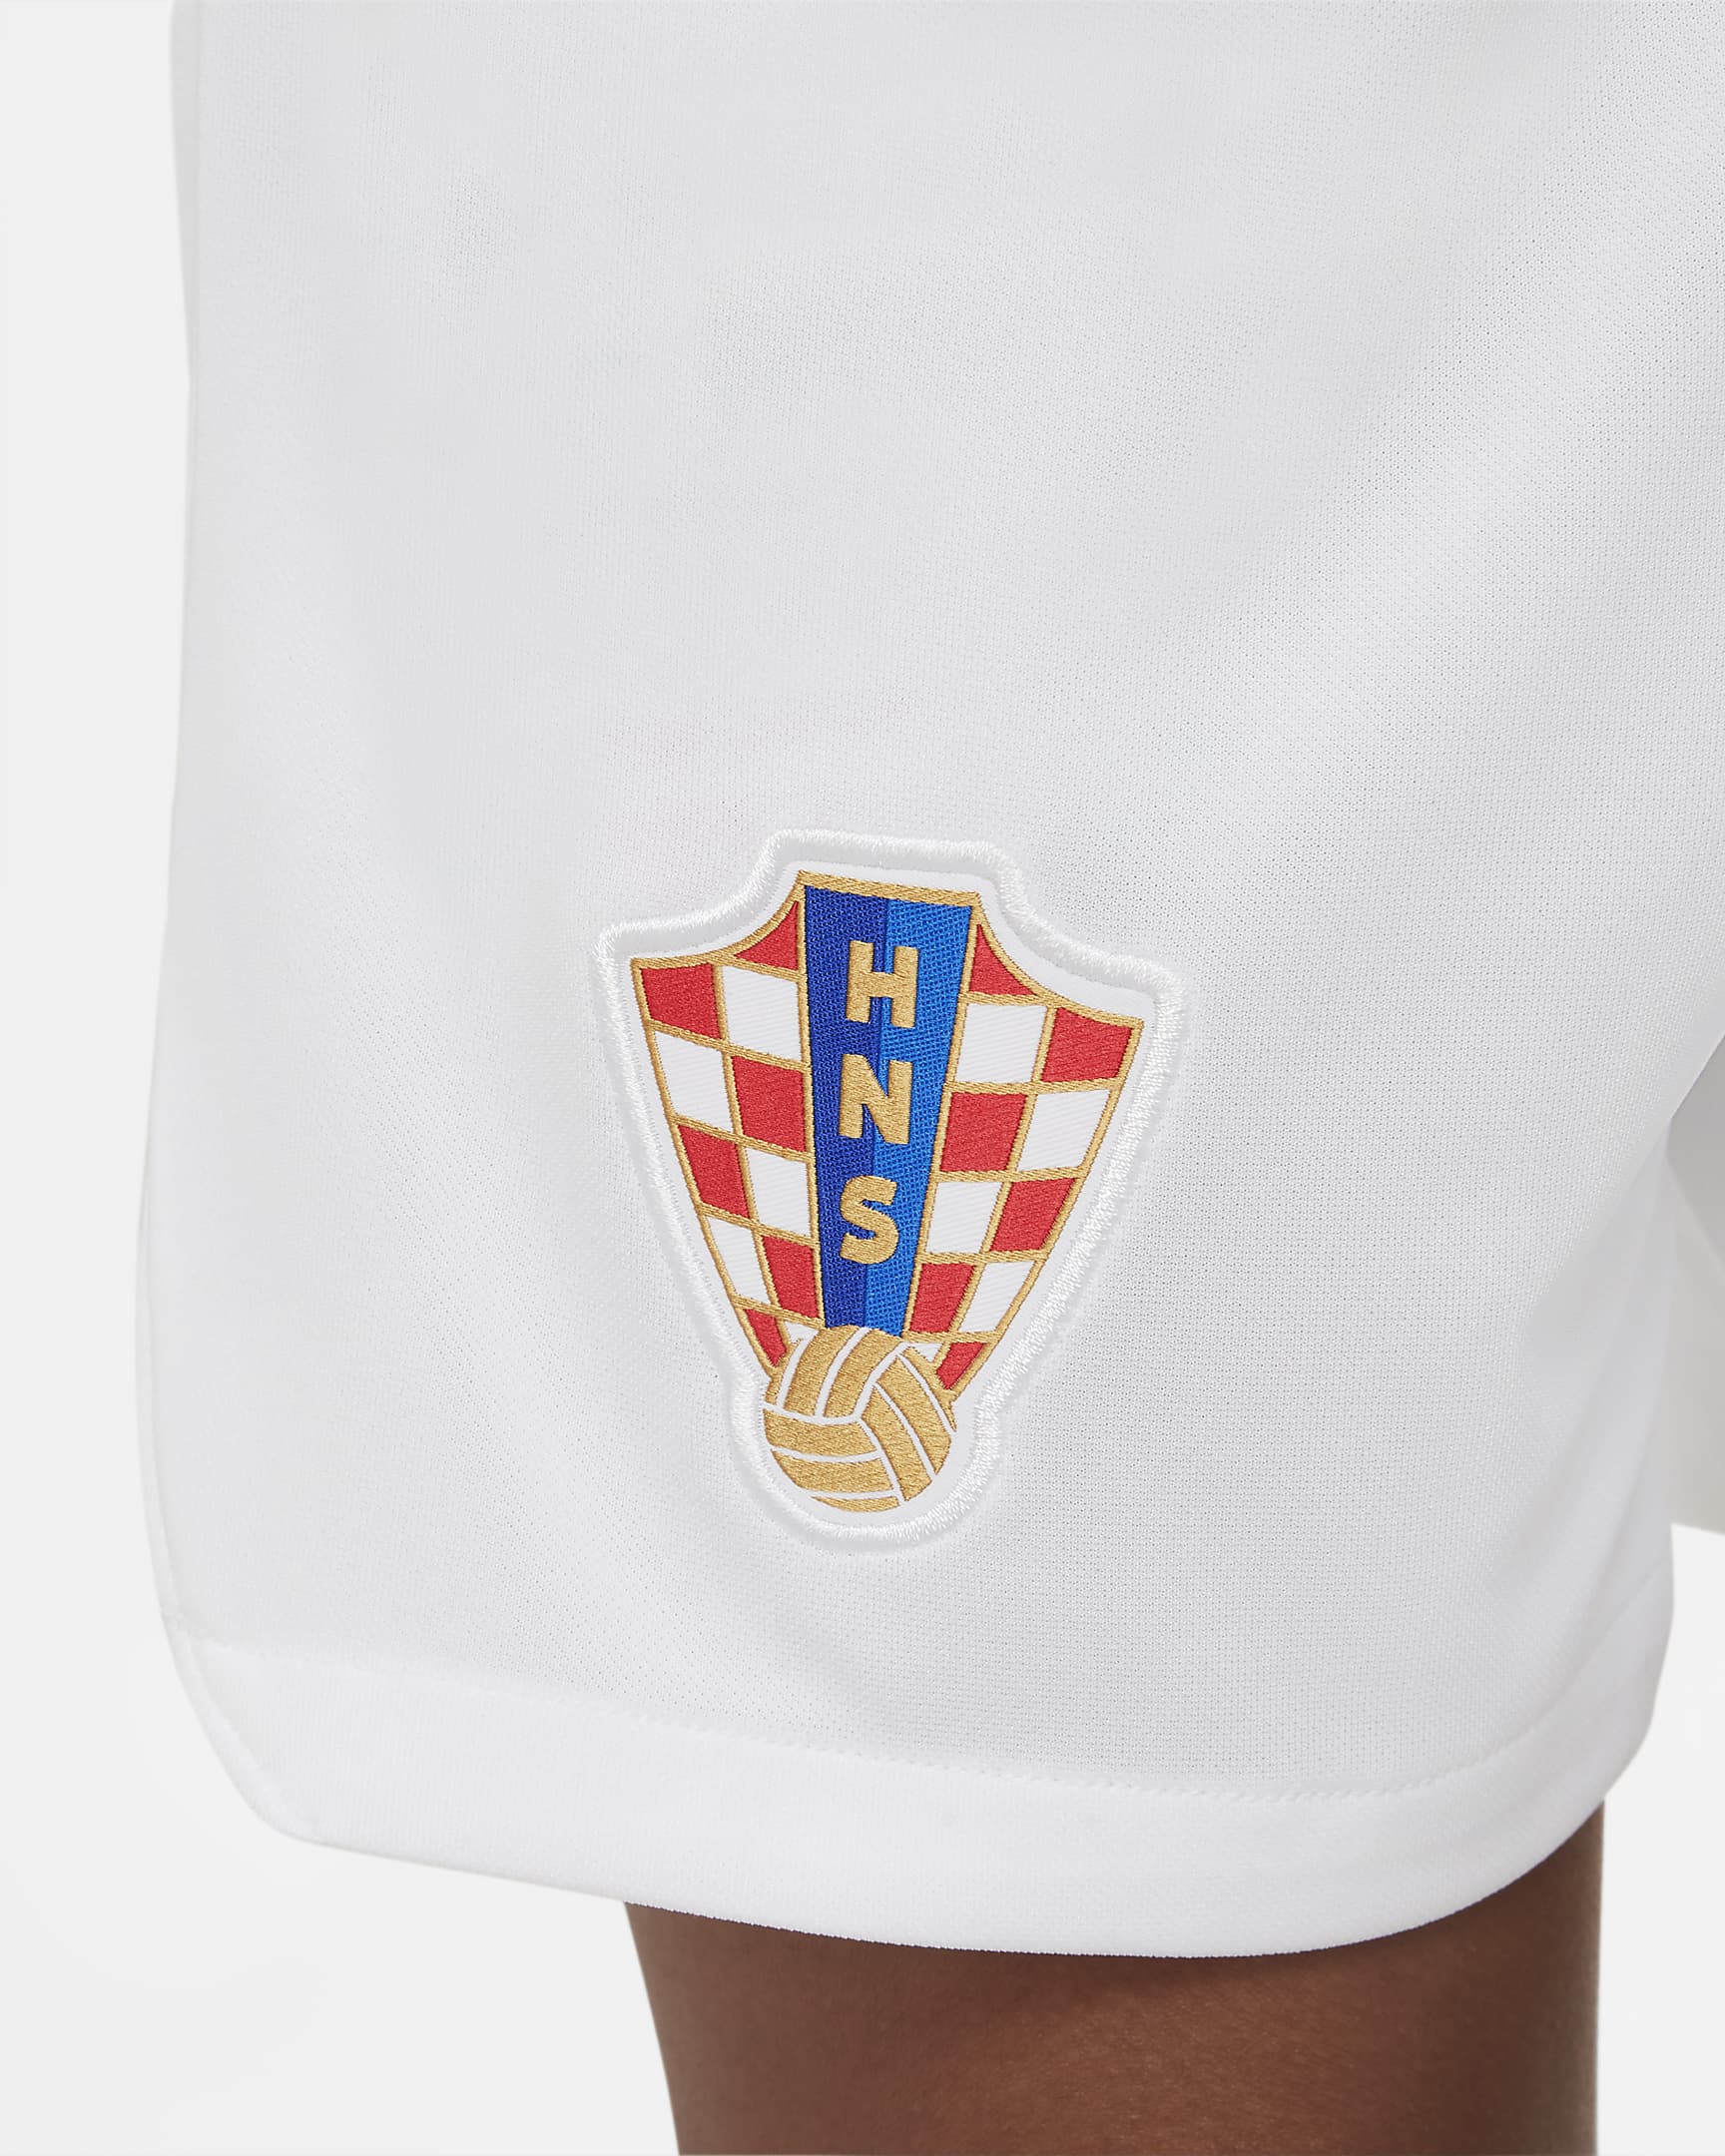 horvátország